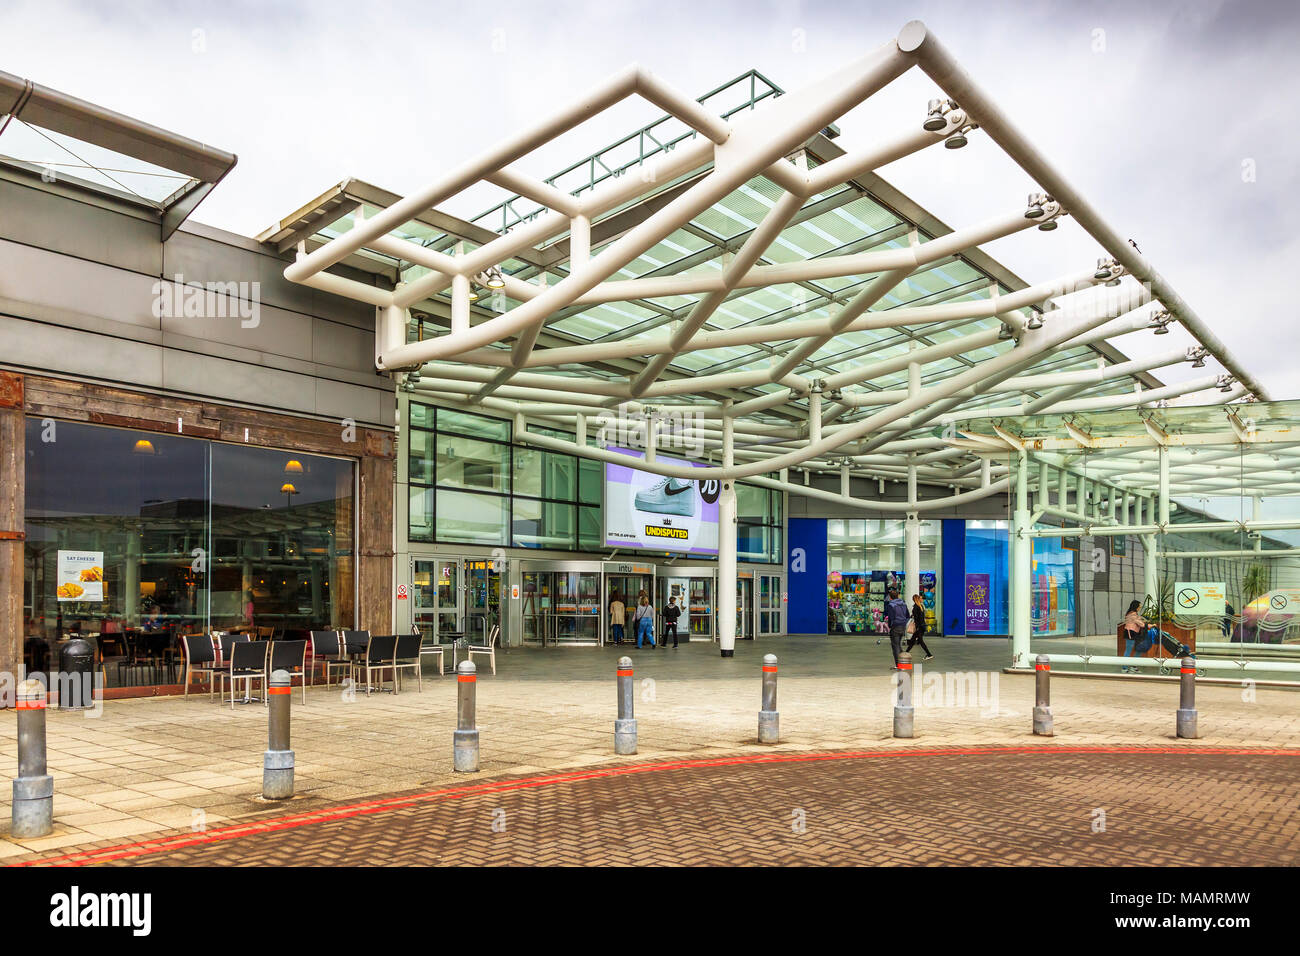 L'accès à l'entrée sud INTU Braehead shopping mall, Braehead, Renfrew, Glasgow, Ecosse Banque D'Images